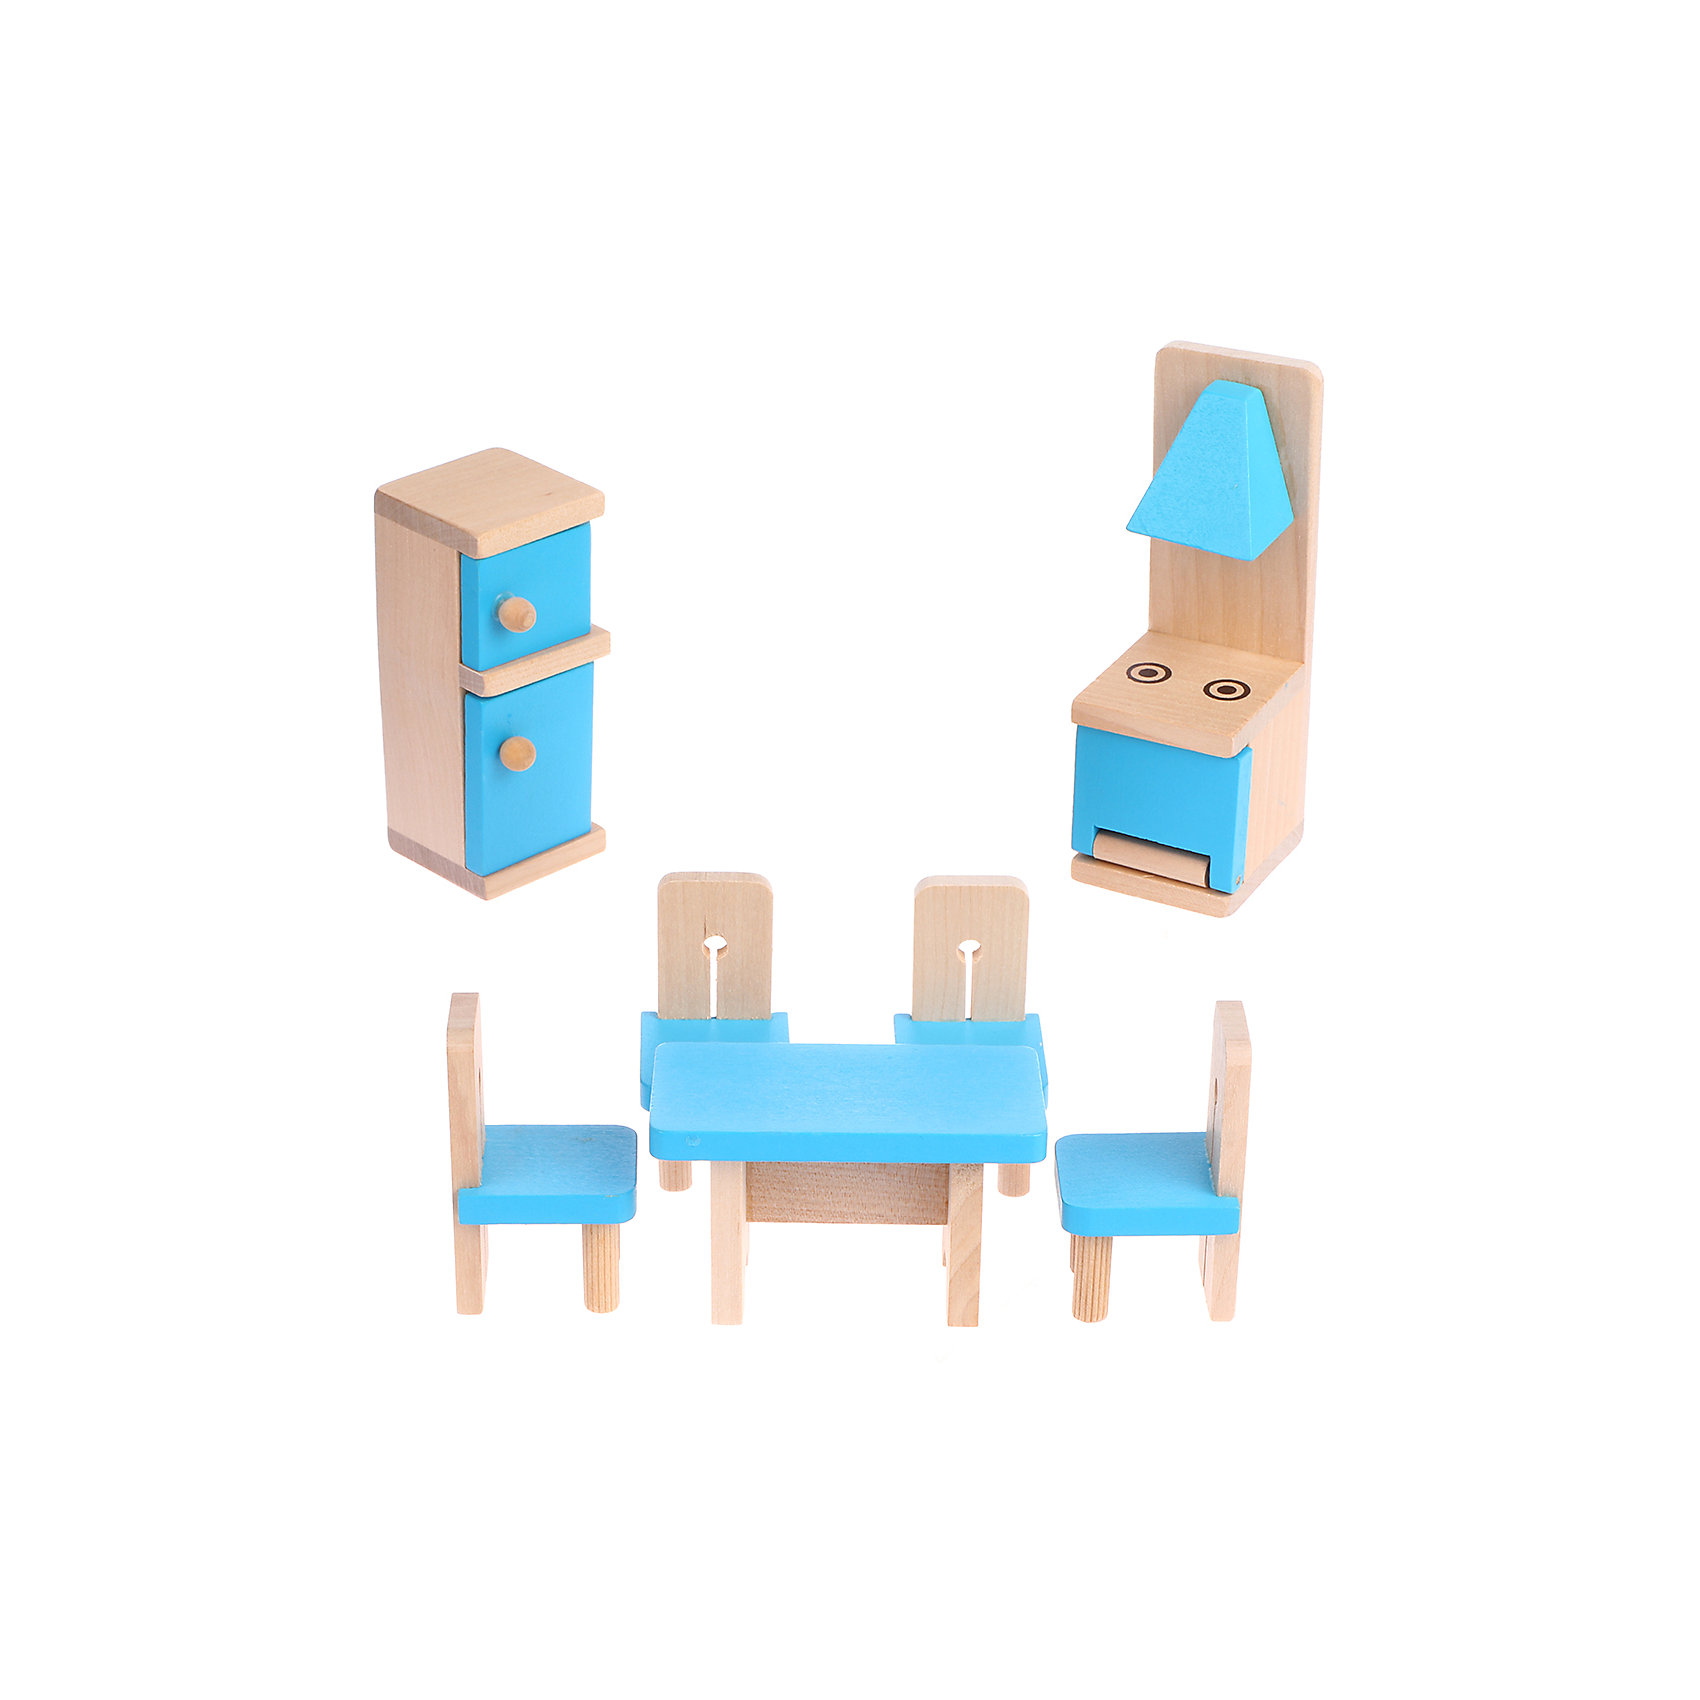 Набор деревянной мебели "Кухня", 7 предметов Наша Игрушка 16742741